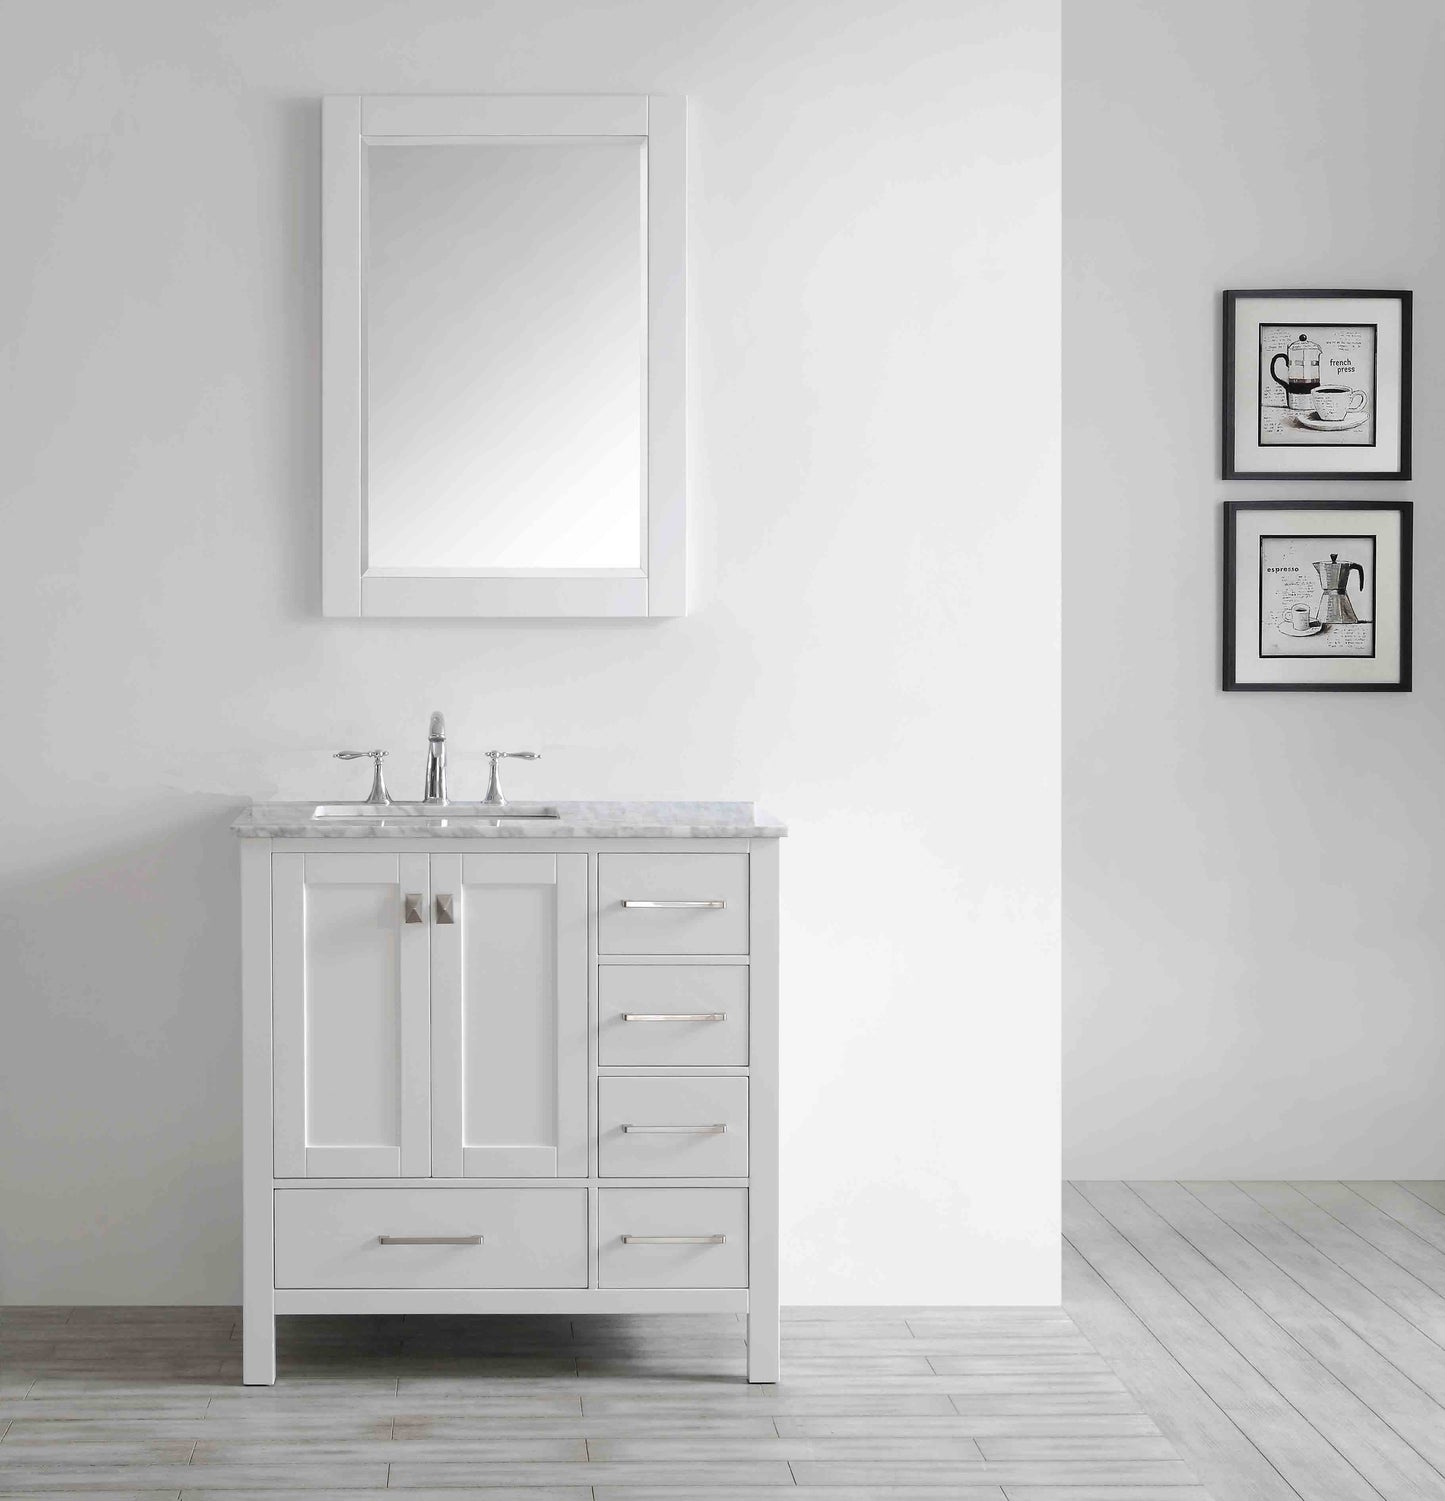 Eviva Aberdeen 36" Transitional Bathroom Vanity with White Carrera Countertop - Luxe Bathroom Vanities Luxury Bathroom Fixtures Bathroom Furniture